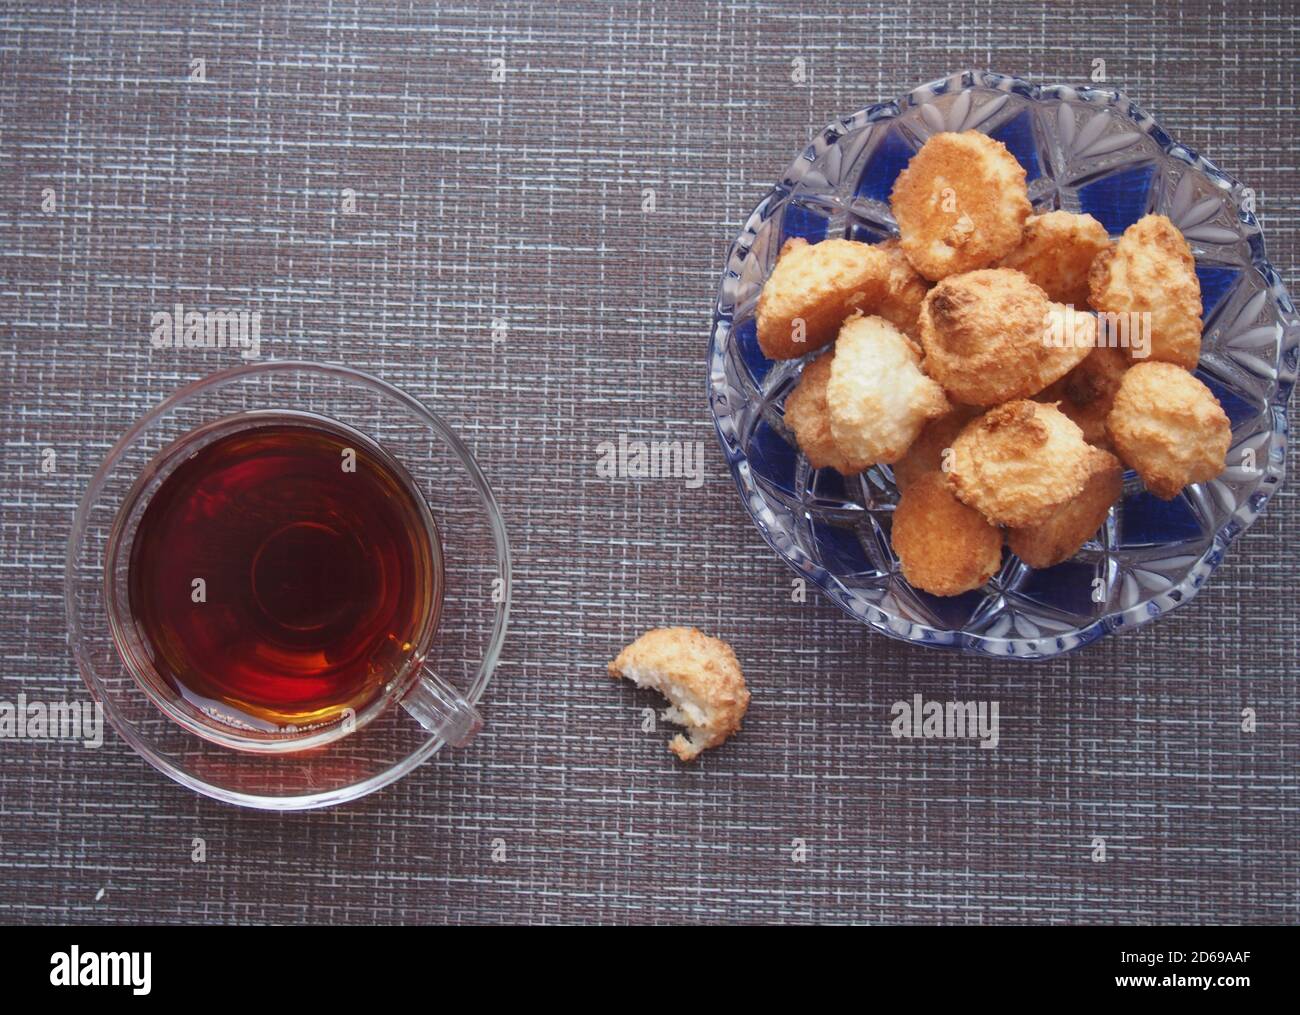 Sur la table, recouverte d'un tissu brun, se trouve une tasse de thé et un bol de biscuits. Encore-vie. Banque D'Images